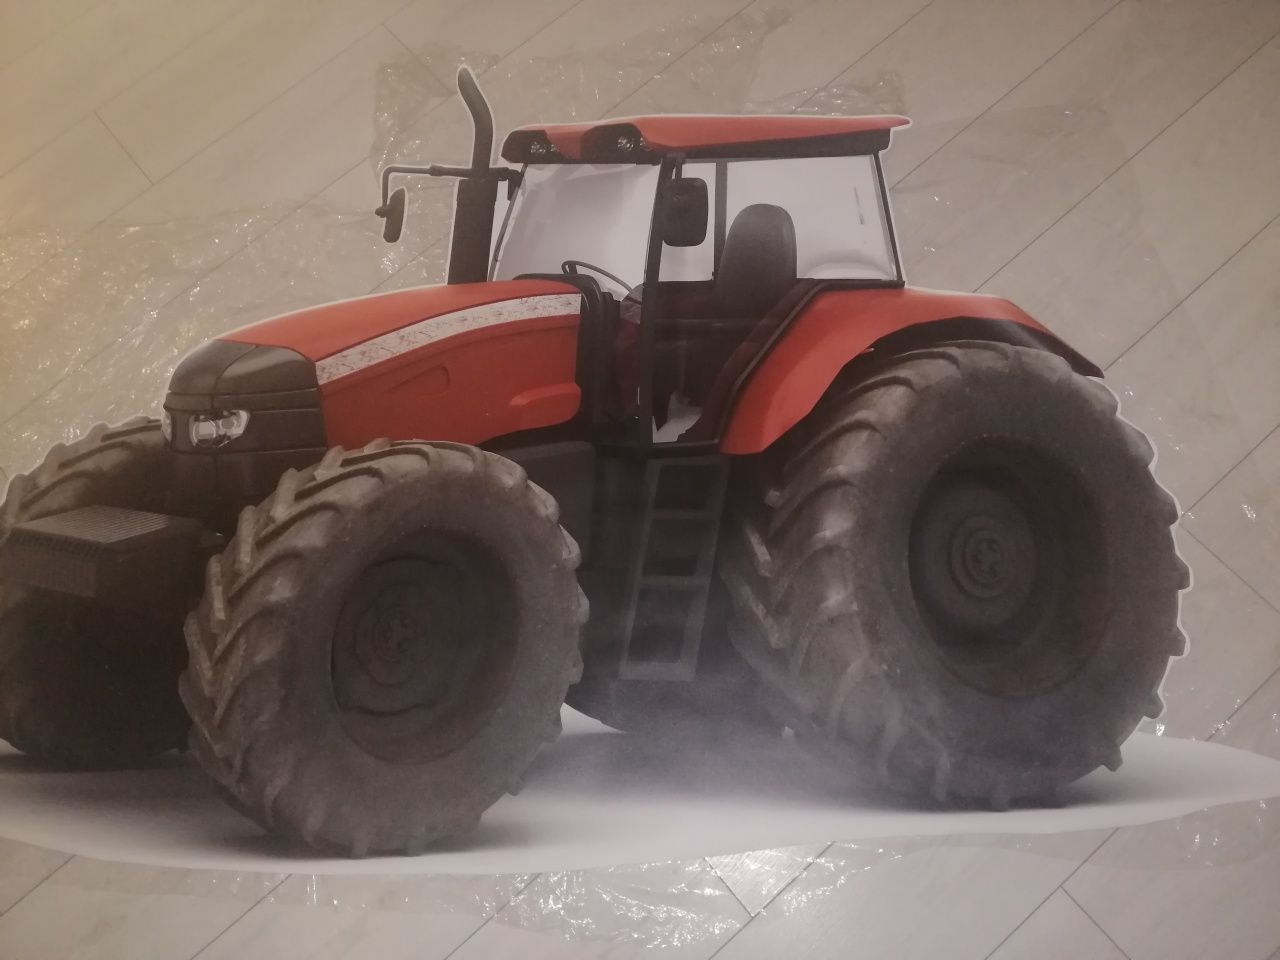 Dekoracja naklejka ścienna 3d traktor duży 160x107cm